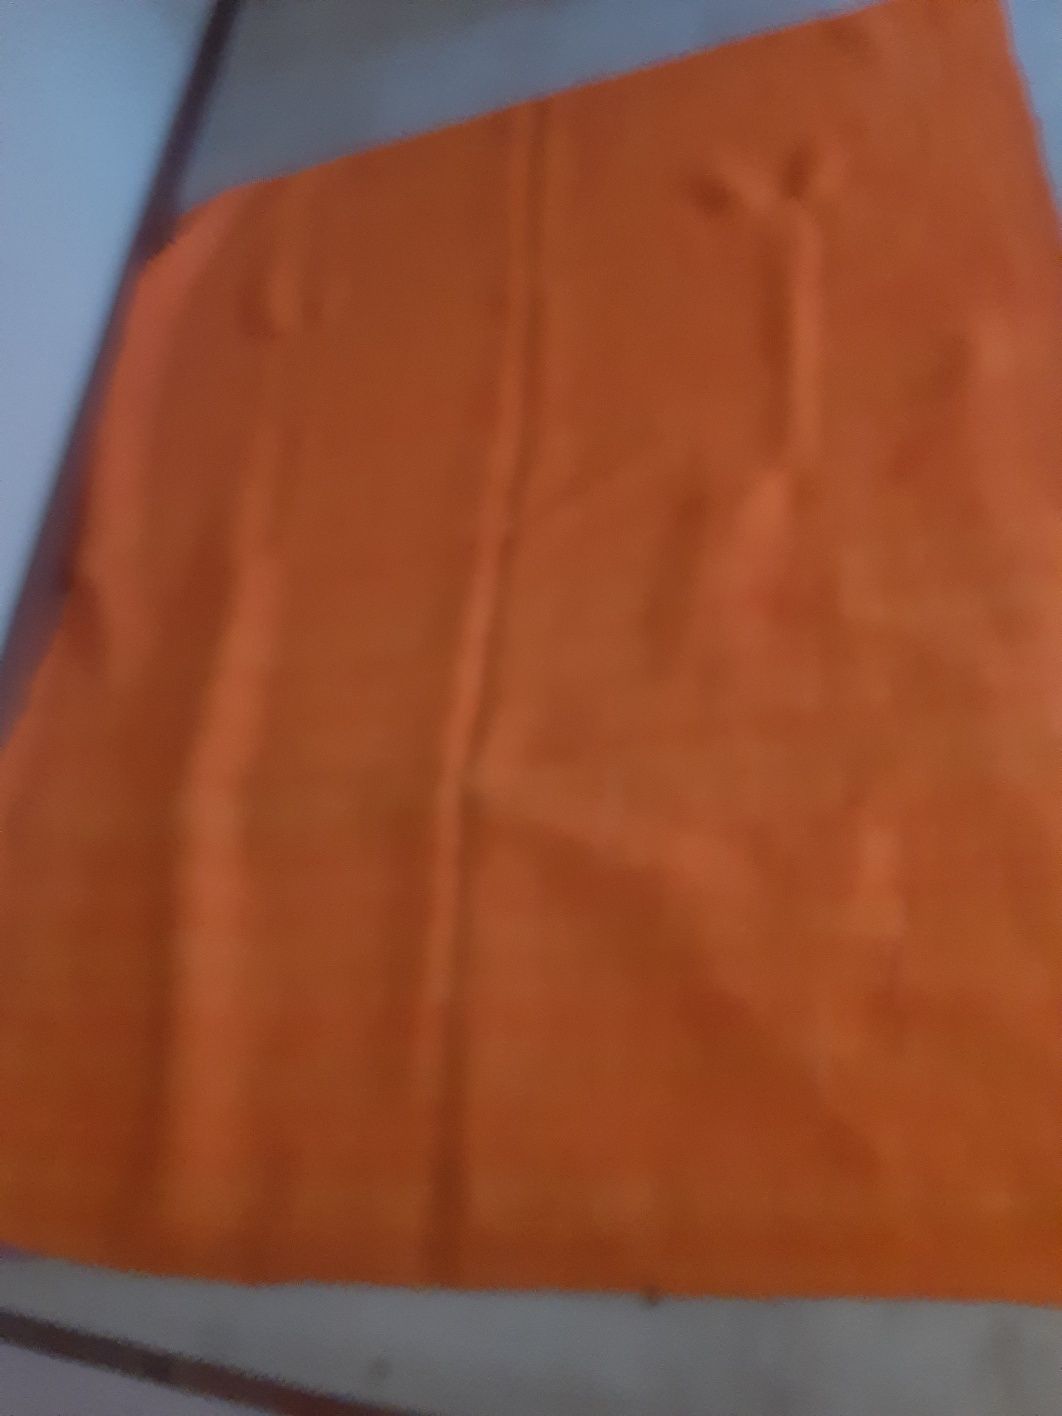 Liteiros/mantas novas e cobertor cor de laranja de lã